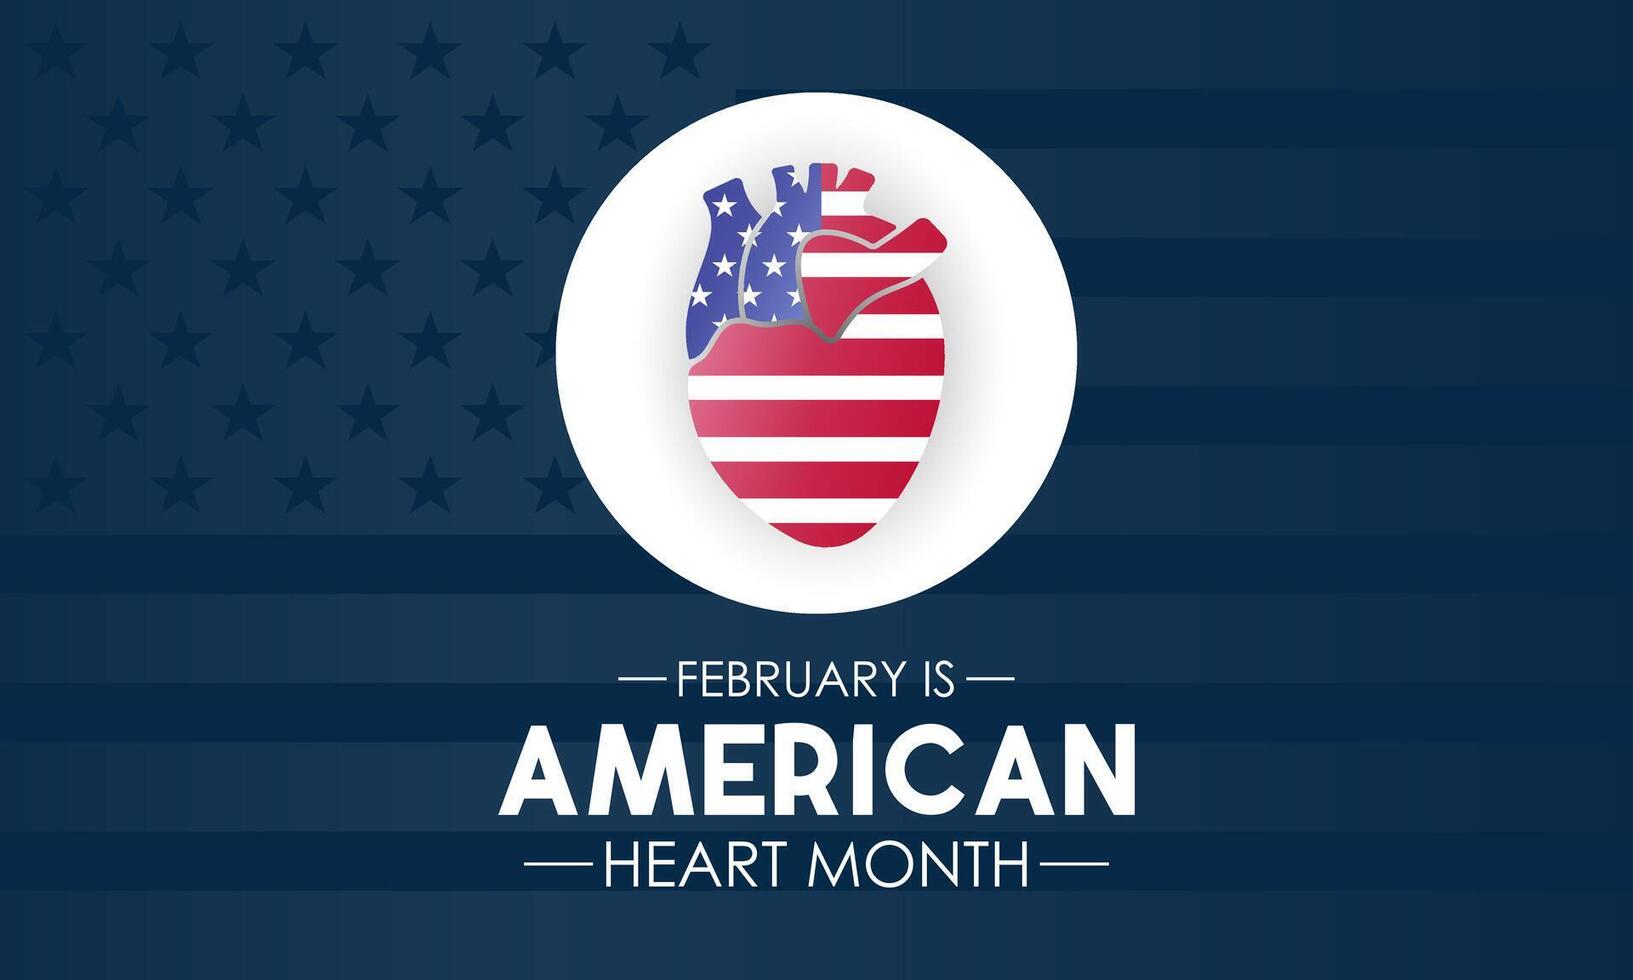 americano coração mês é observado cada ano dentro fevereiro. fevereiro é americano coração mês. vetor modelo para bandeira, cartão, poster com fundo. vetor ilustração.